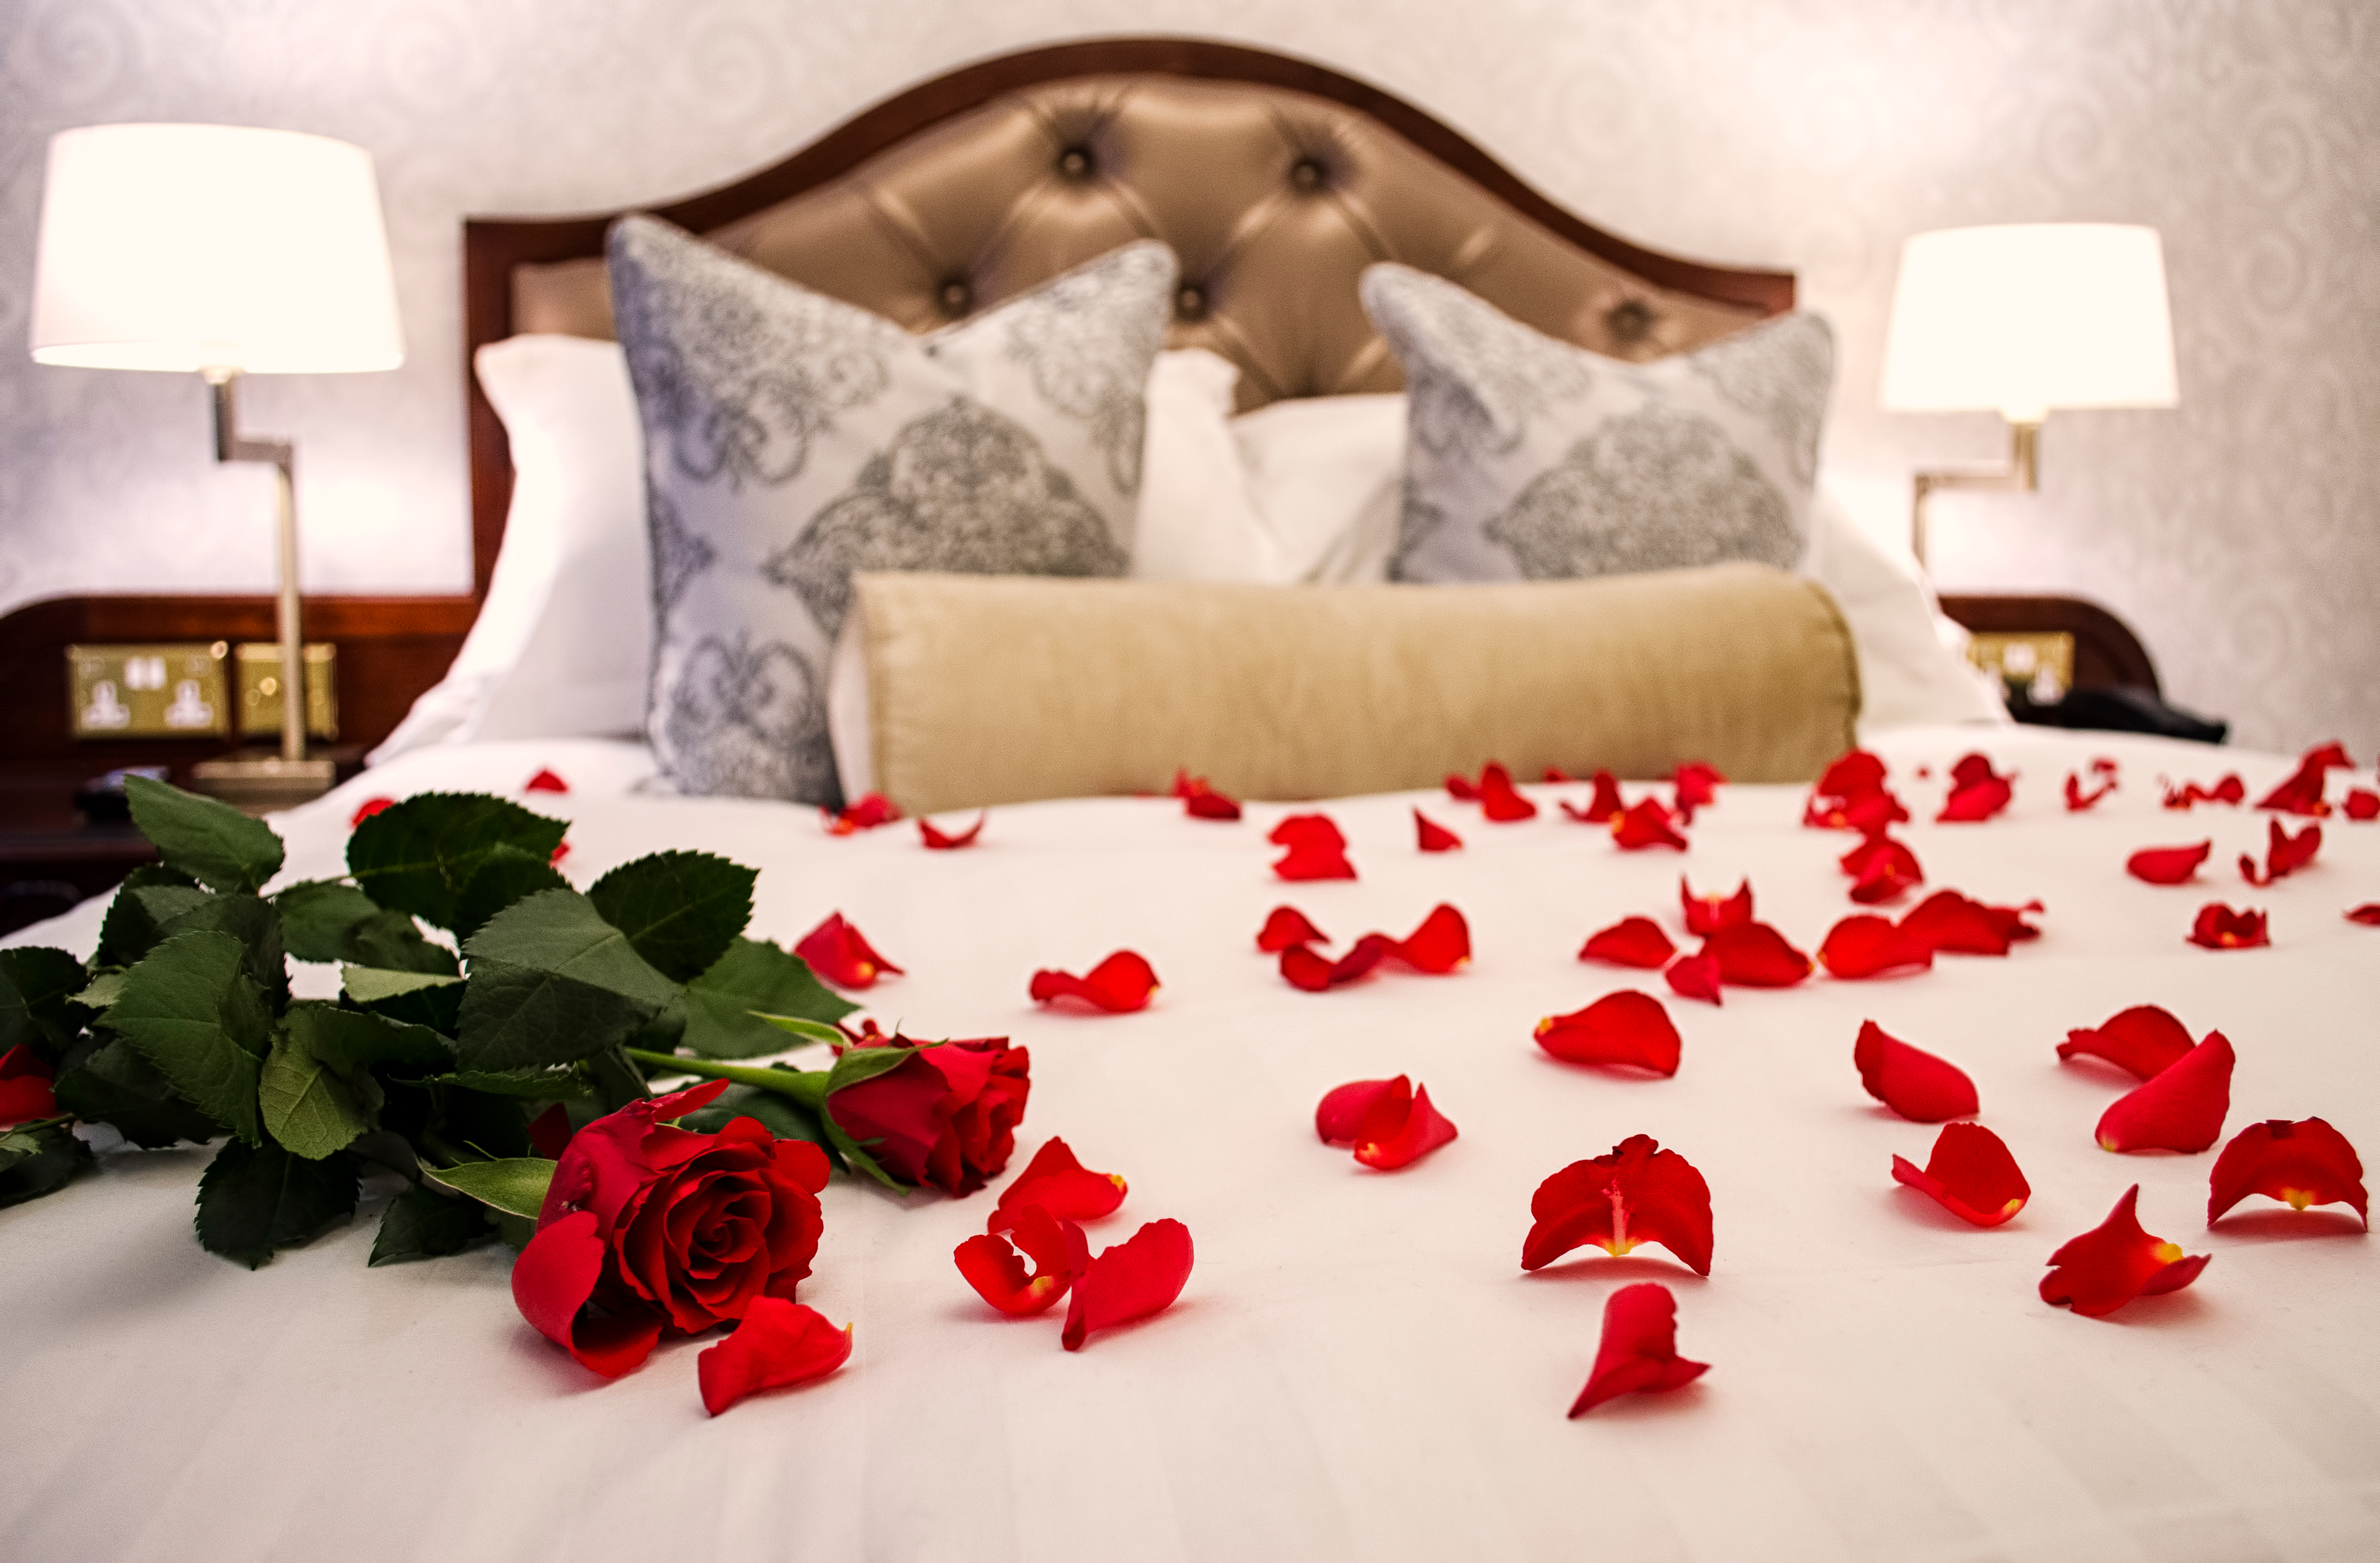 Pétales de roses sur un lit aux draps blancs | Source : Shutterstock